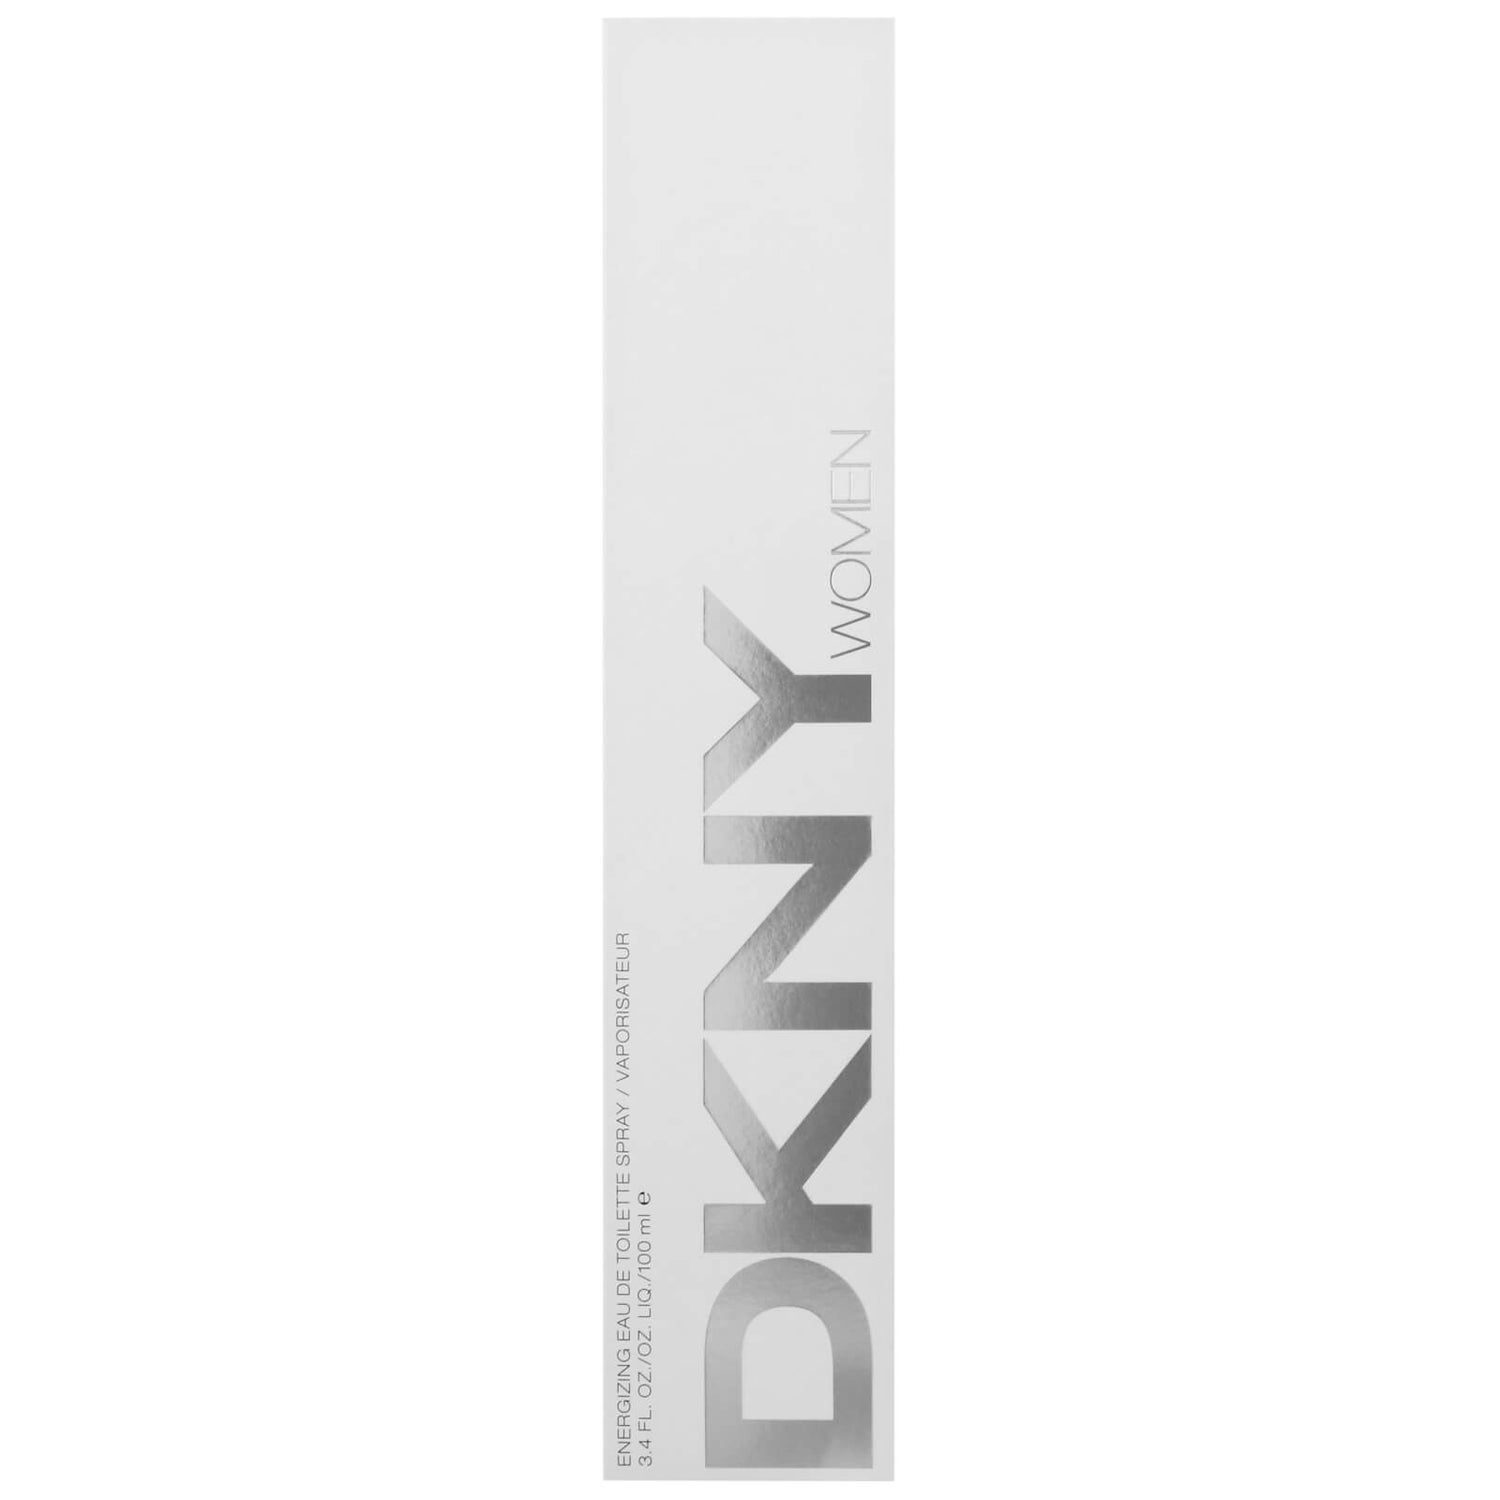 DKNY Women Energizing Eau de Toilette Spray 100ml - allbeauty